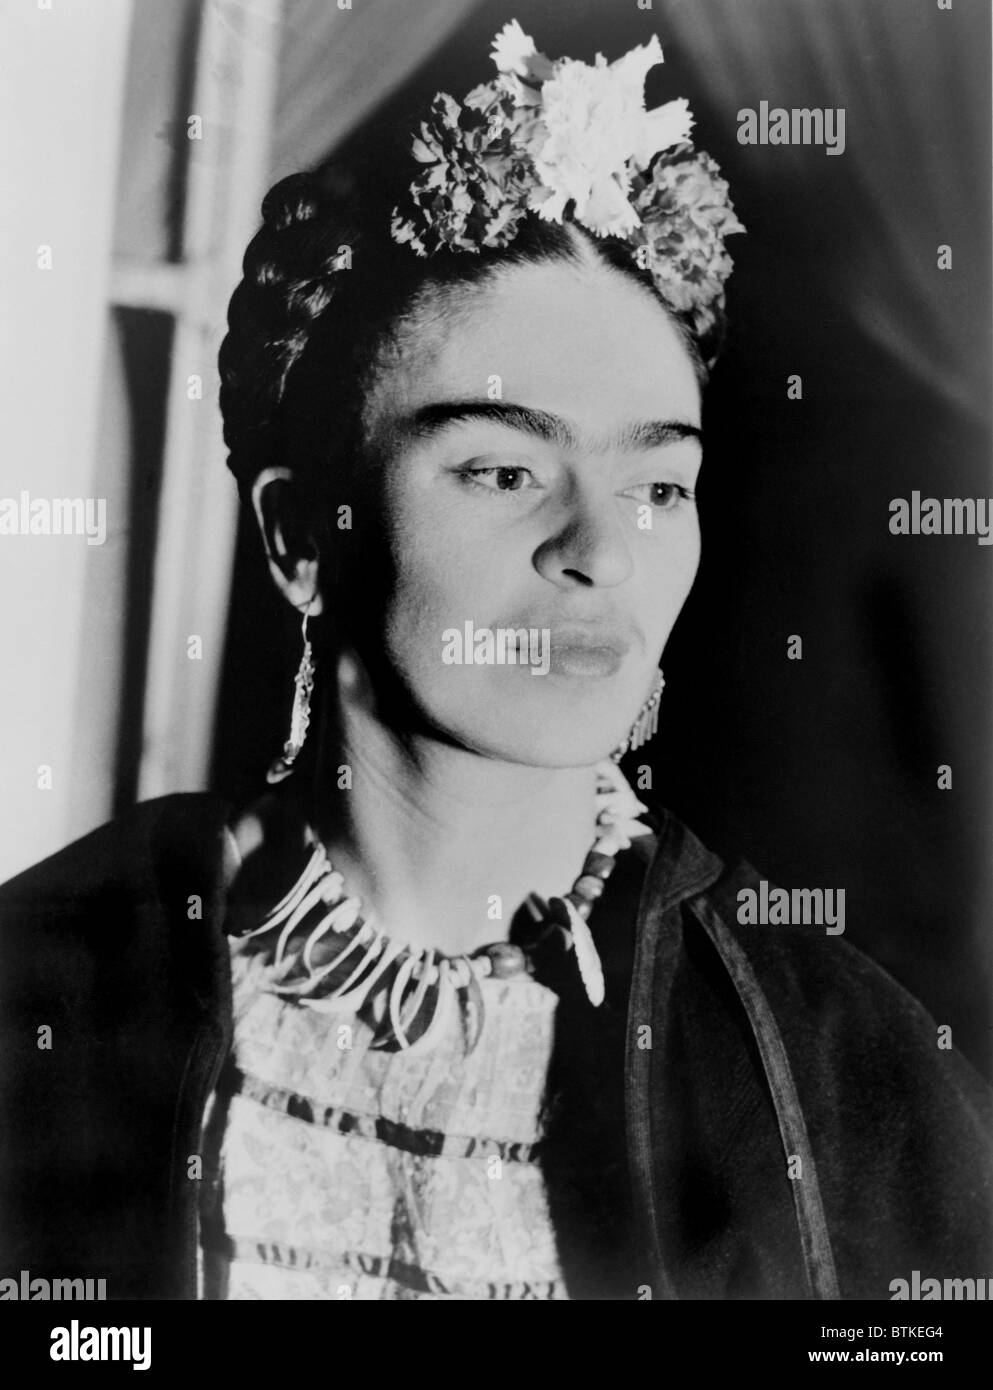 Frida Kahlo (1907-1954), artiste Mexicain, peint dans un style influencé par le surréalisme, le réalisme et l'art populaire mexicain Banque D'Images